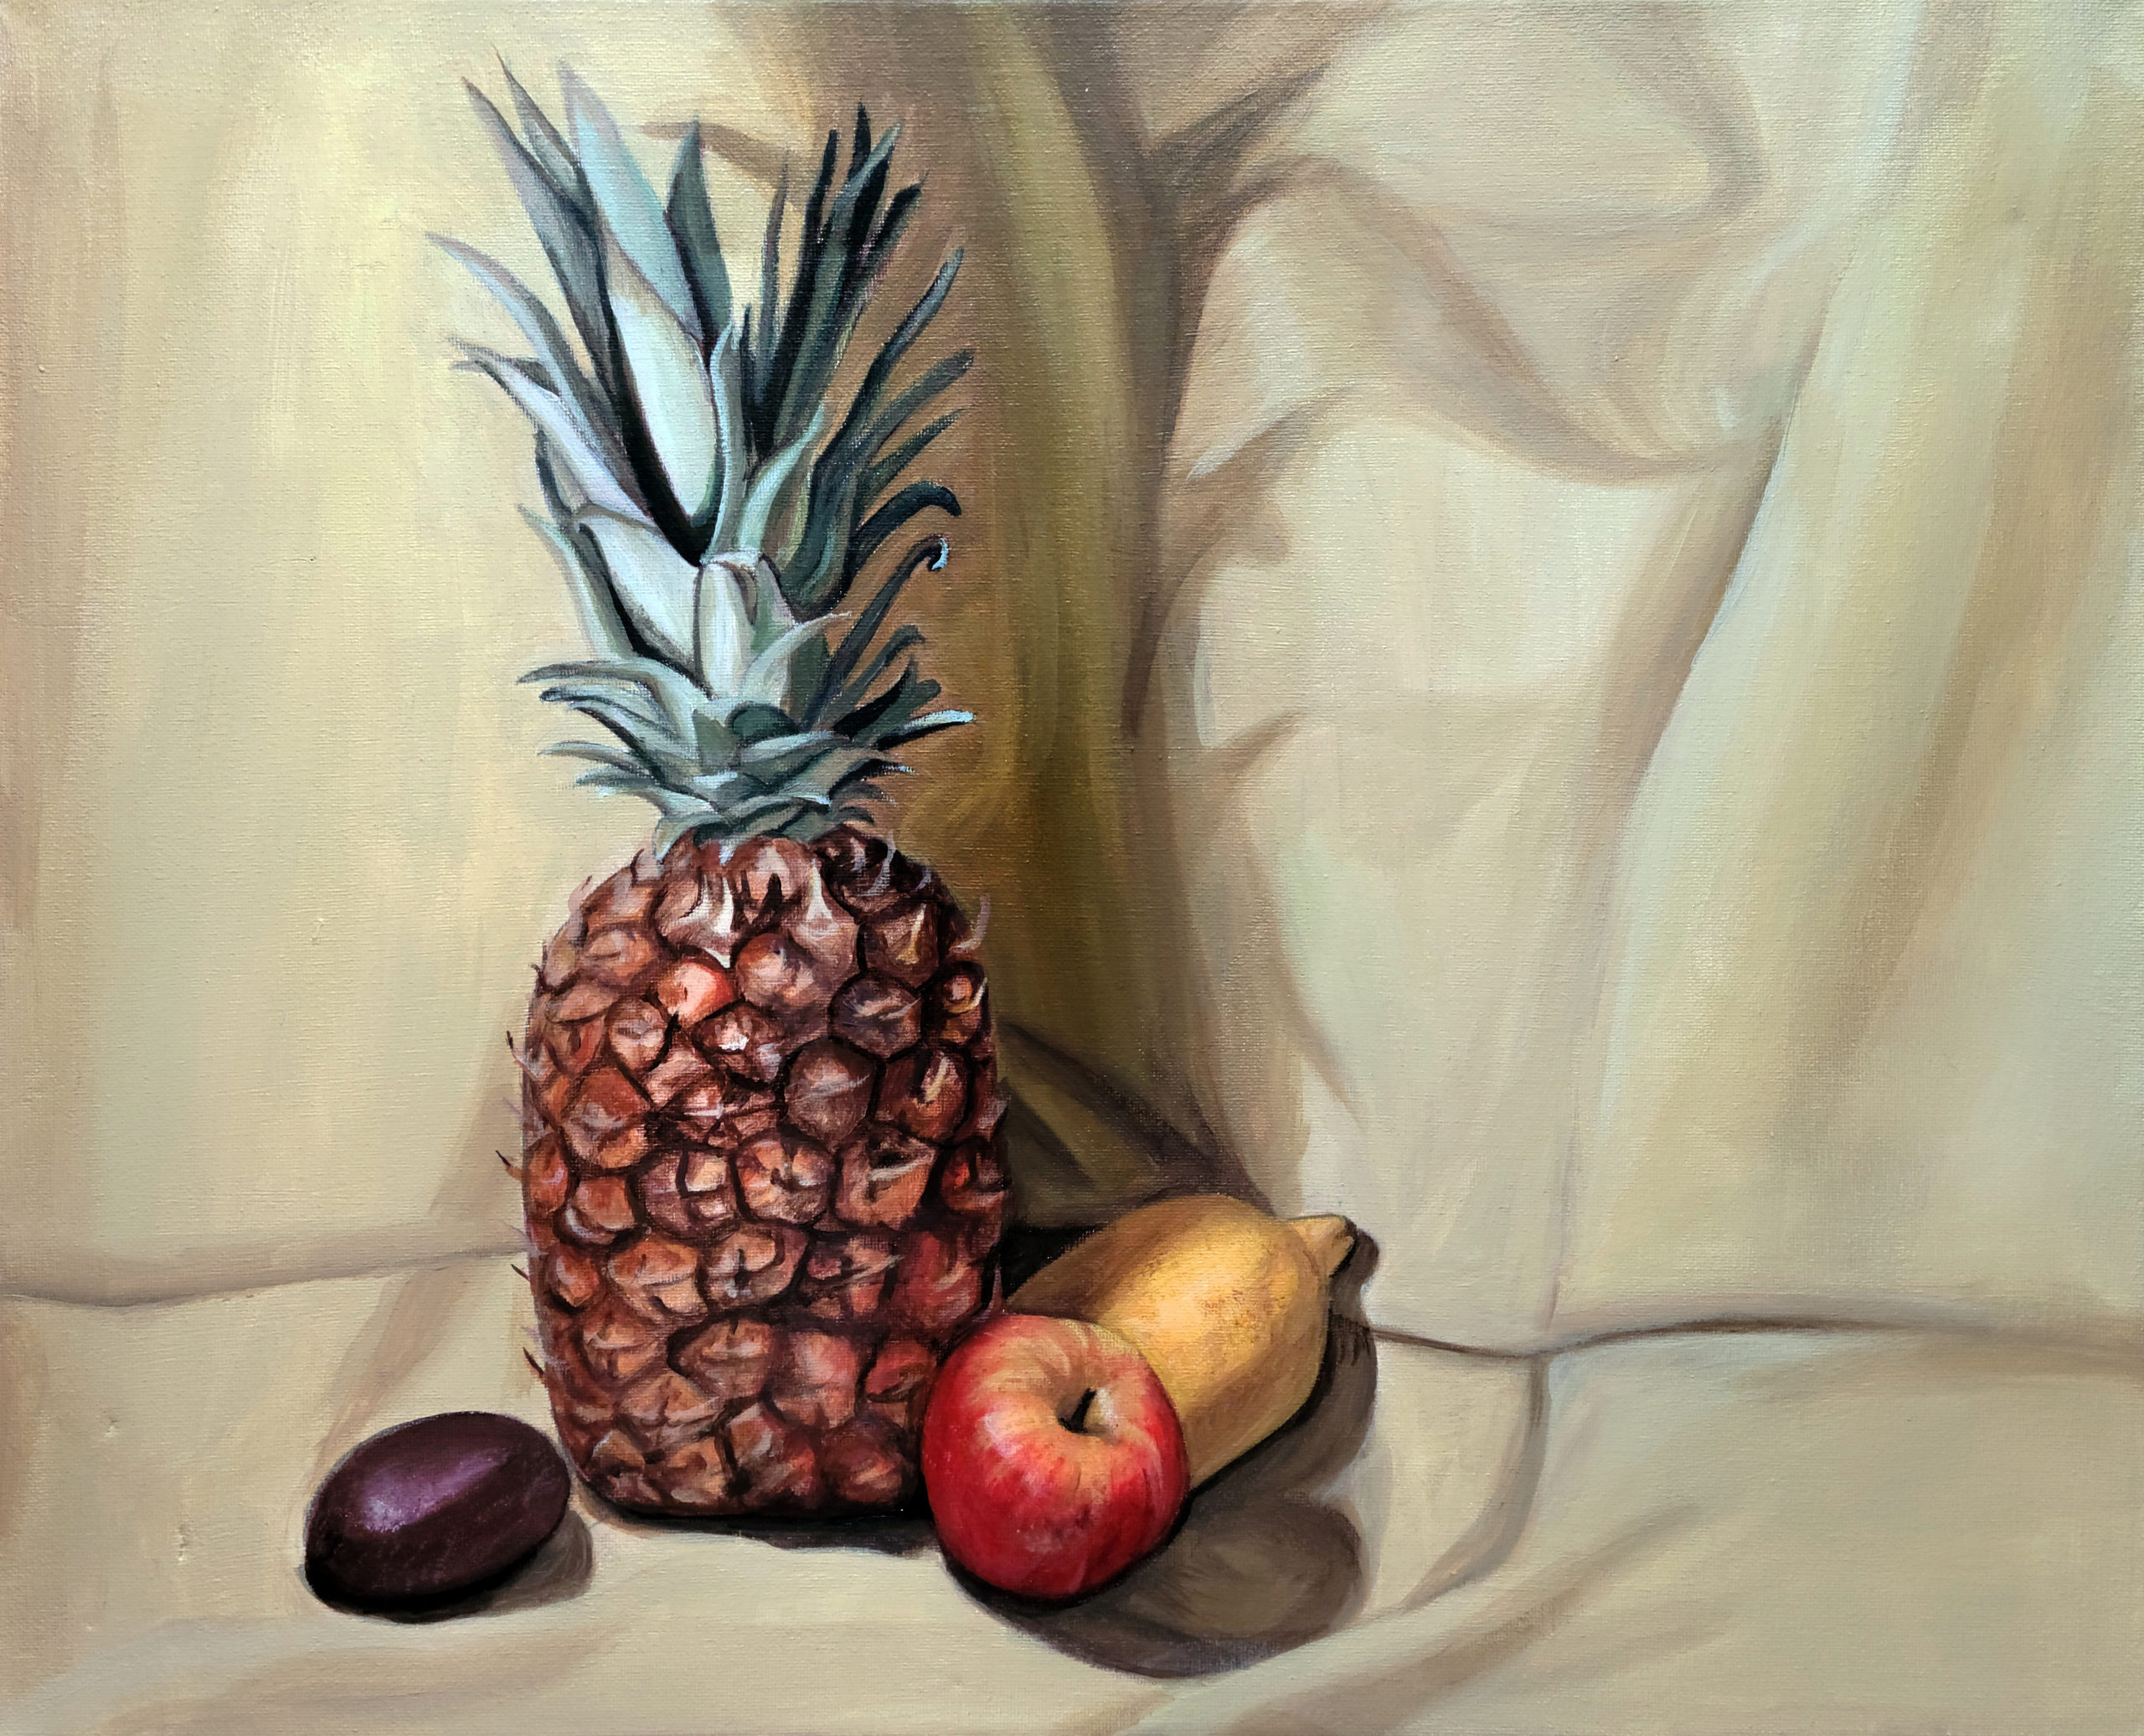 Lexi Finnegan art titled The Pineapple